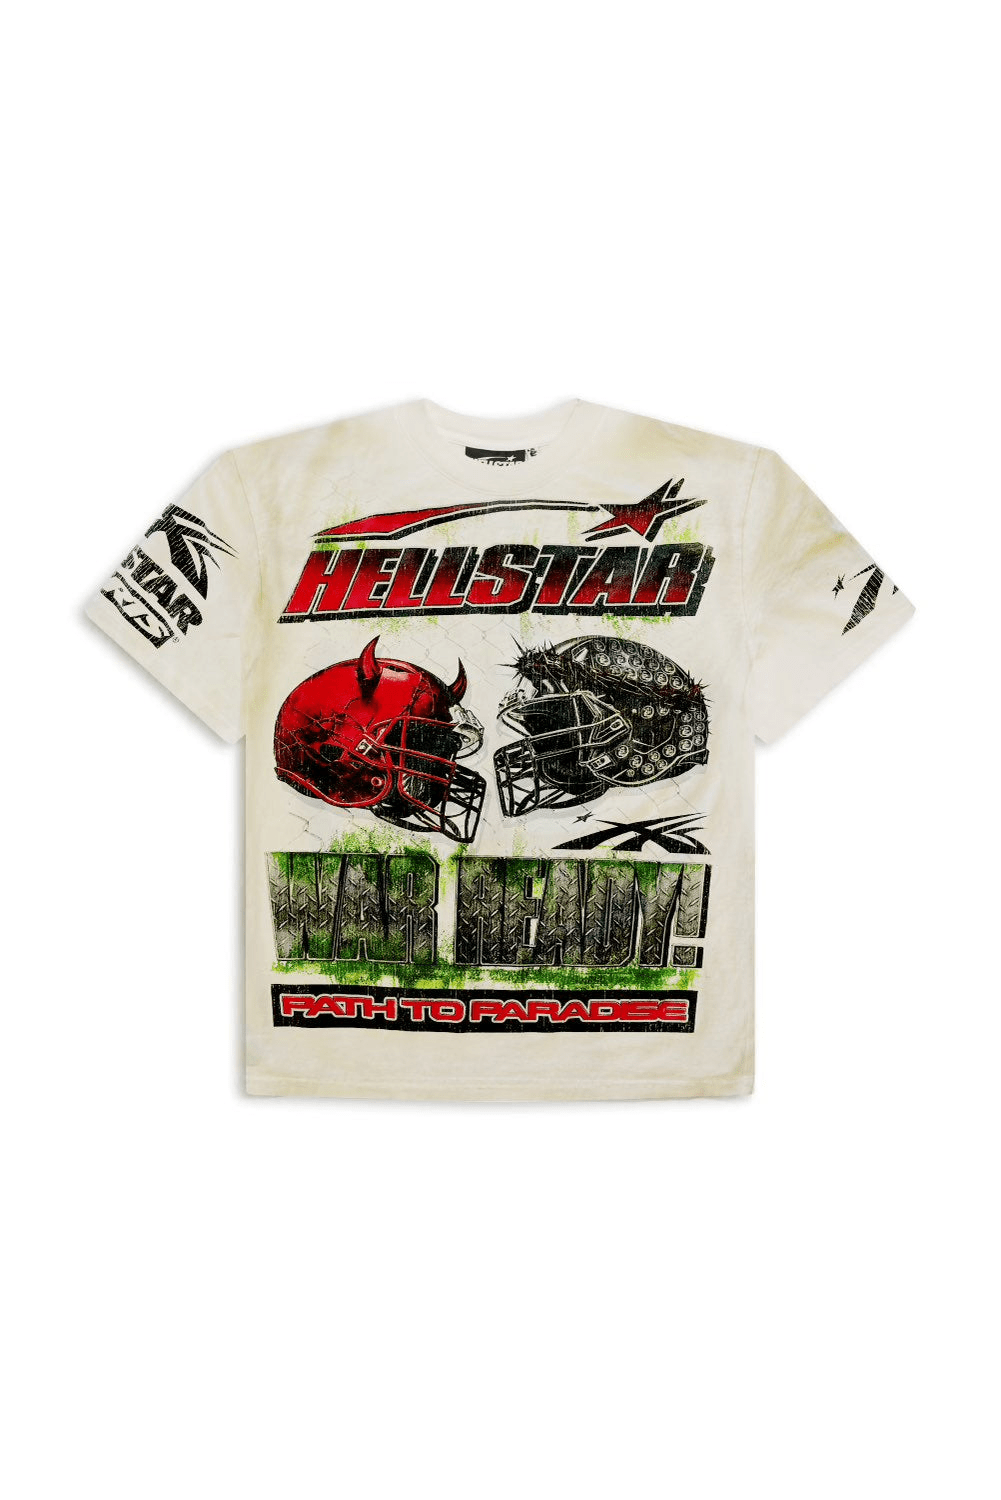 Hellstar War Ready! T-Shirt White